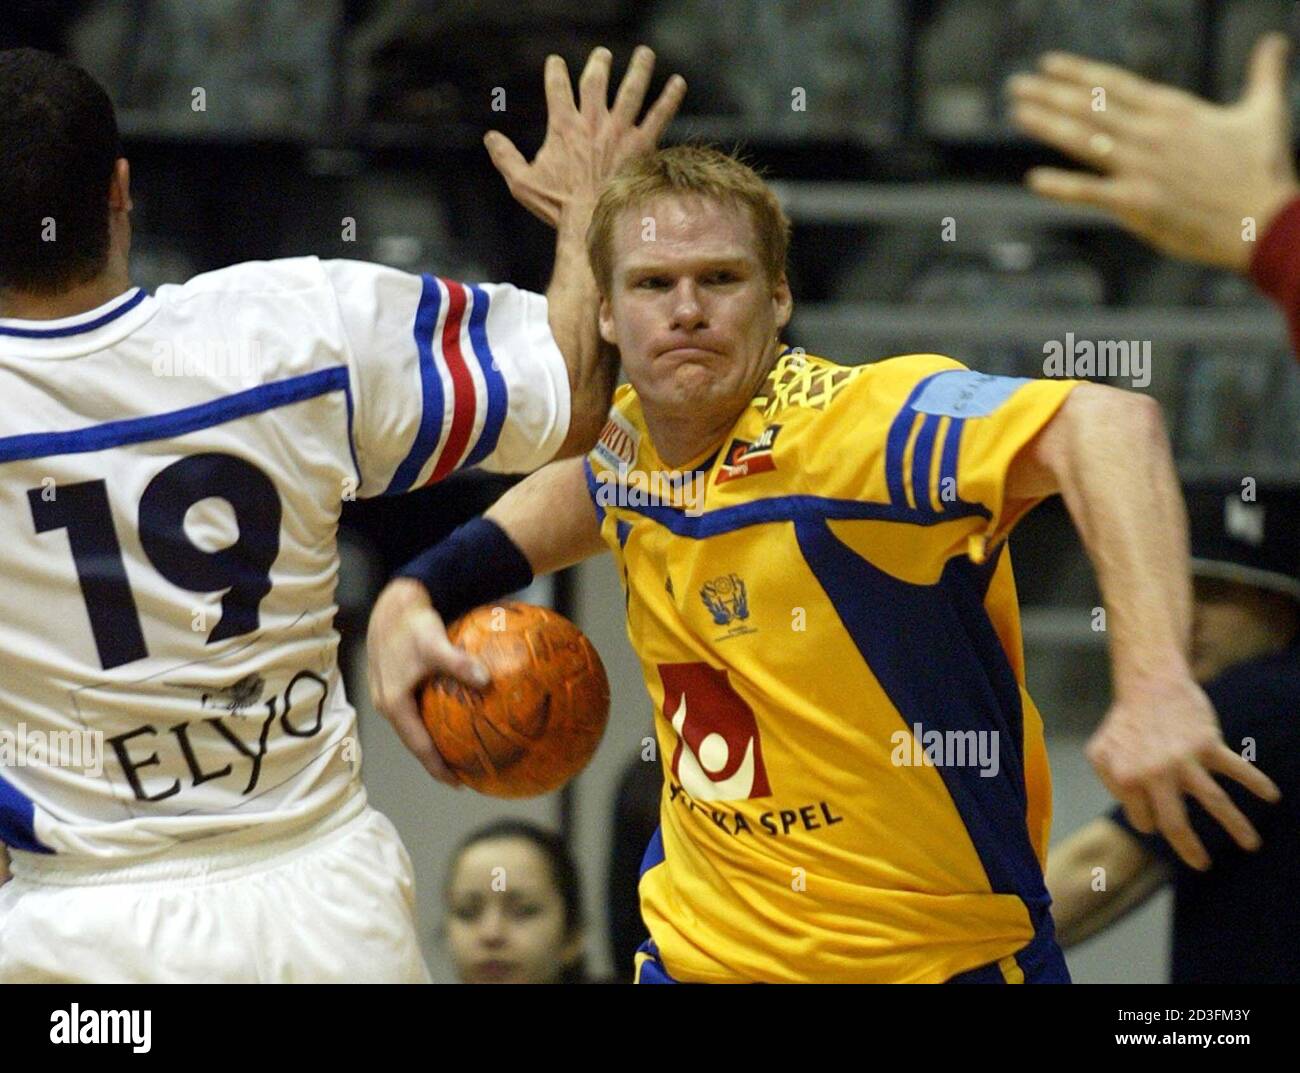 Mathias Franzen (R) de Suecia pasa a Patrick Cazal (L) de Francia durante su balonmano mach en la Copa de las Naciones 2003 en Belgrado 5 de enero de 2003. REUTERS/Ivan Milutinovic IM/AA Foto de stock